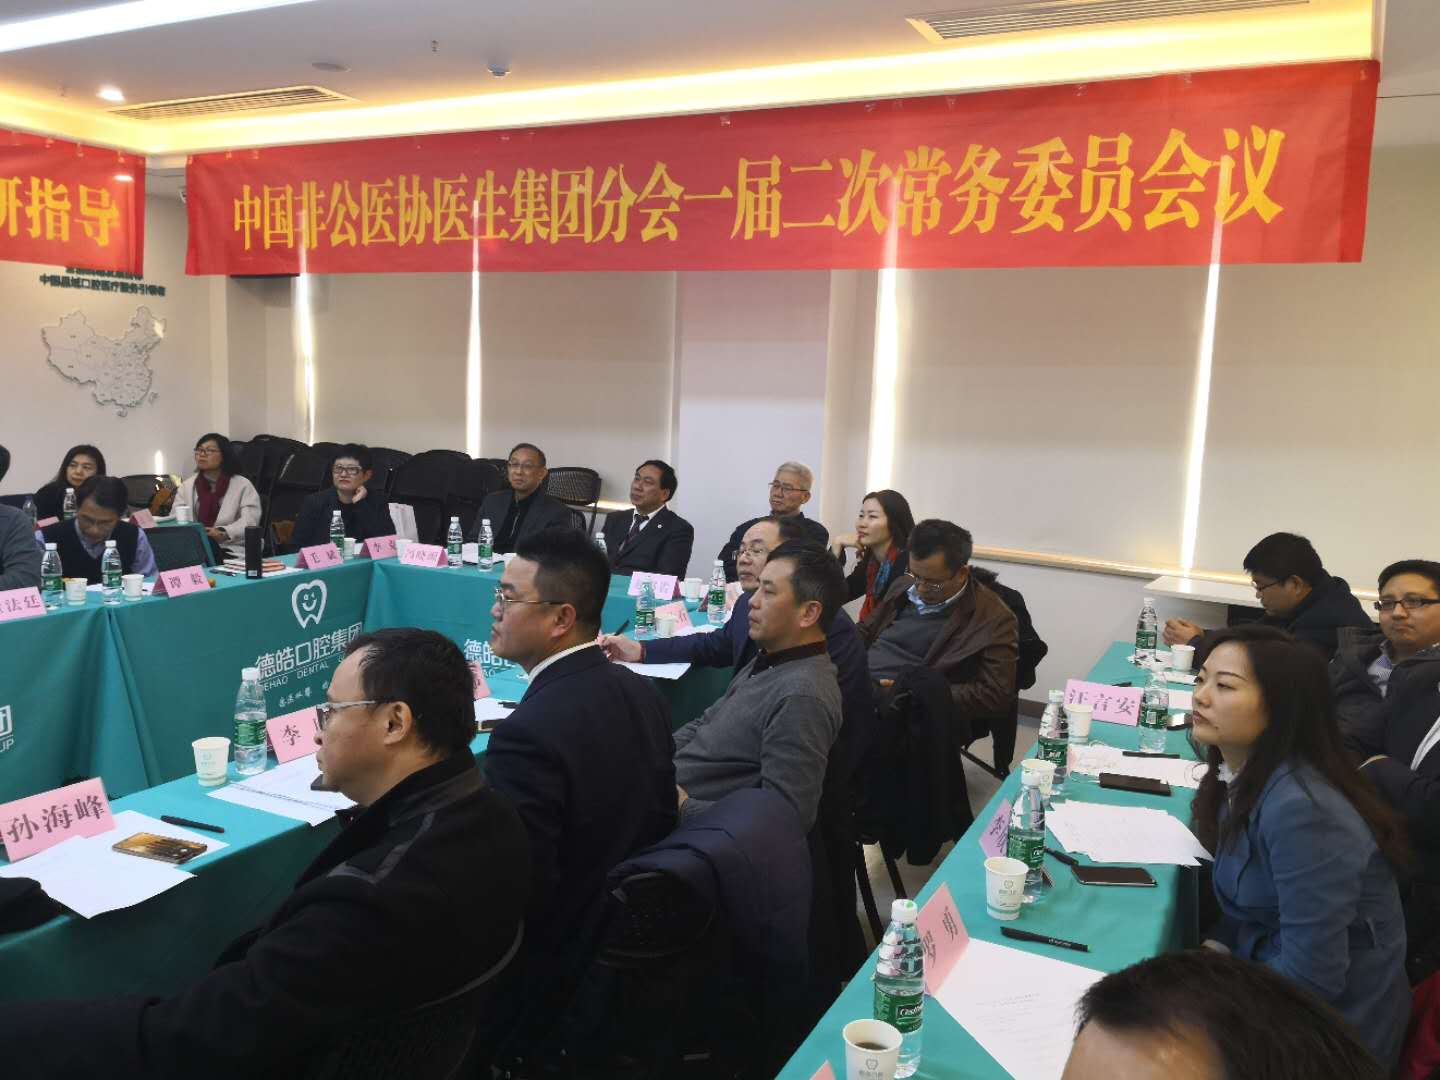 分支机构丨中国非公立医疗机构协会医生集团分会第一届二次常委会在长沙举行